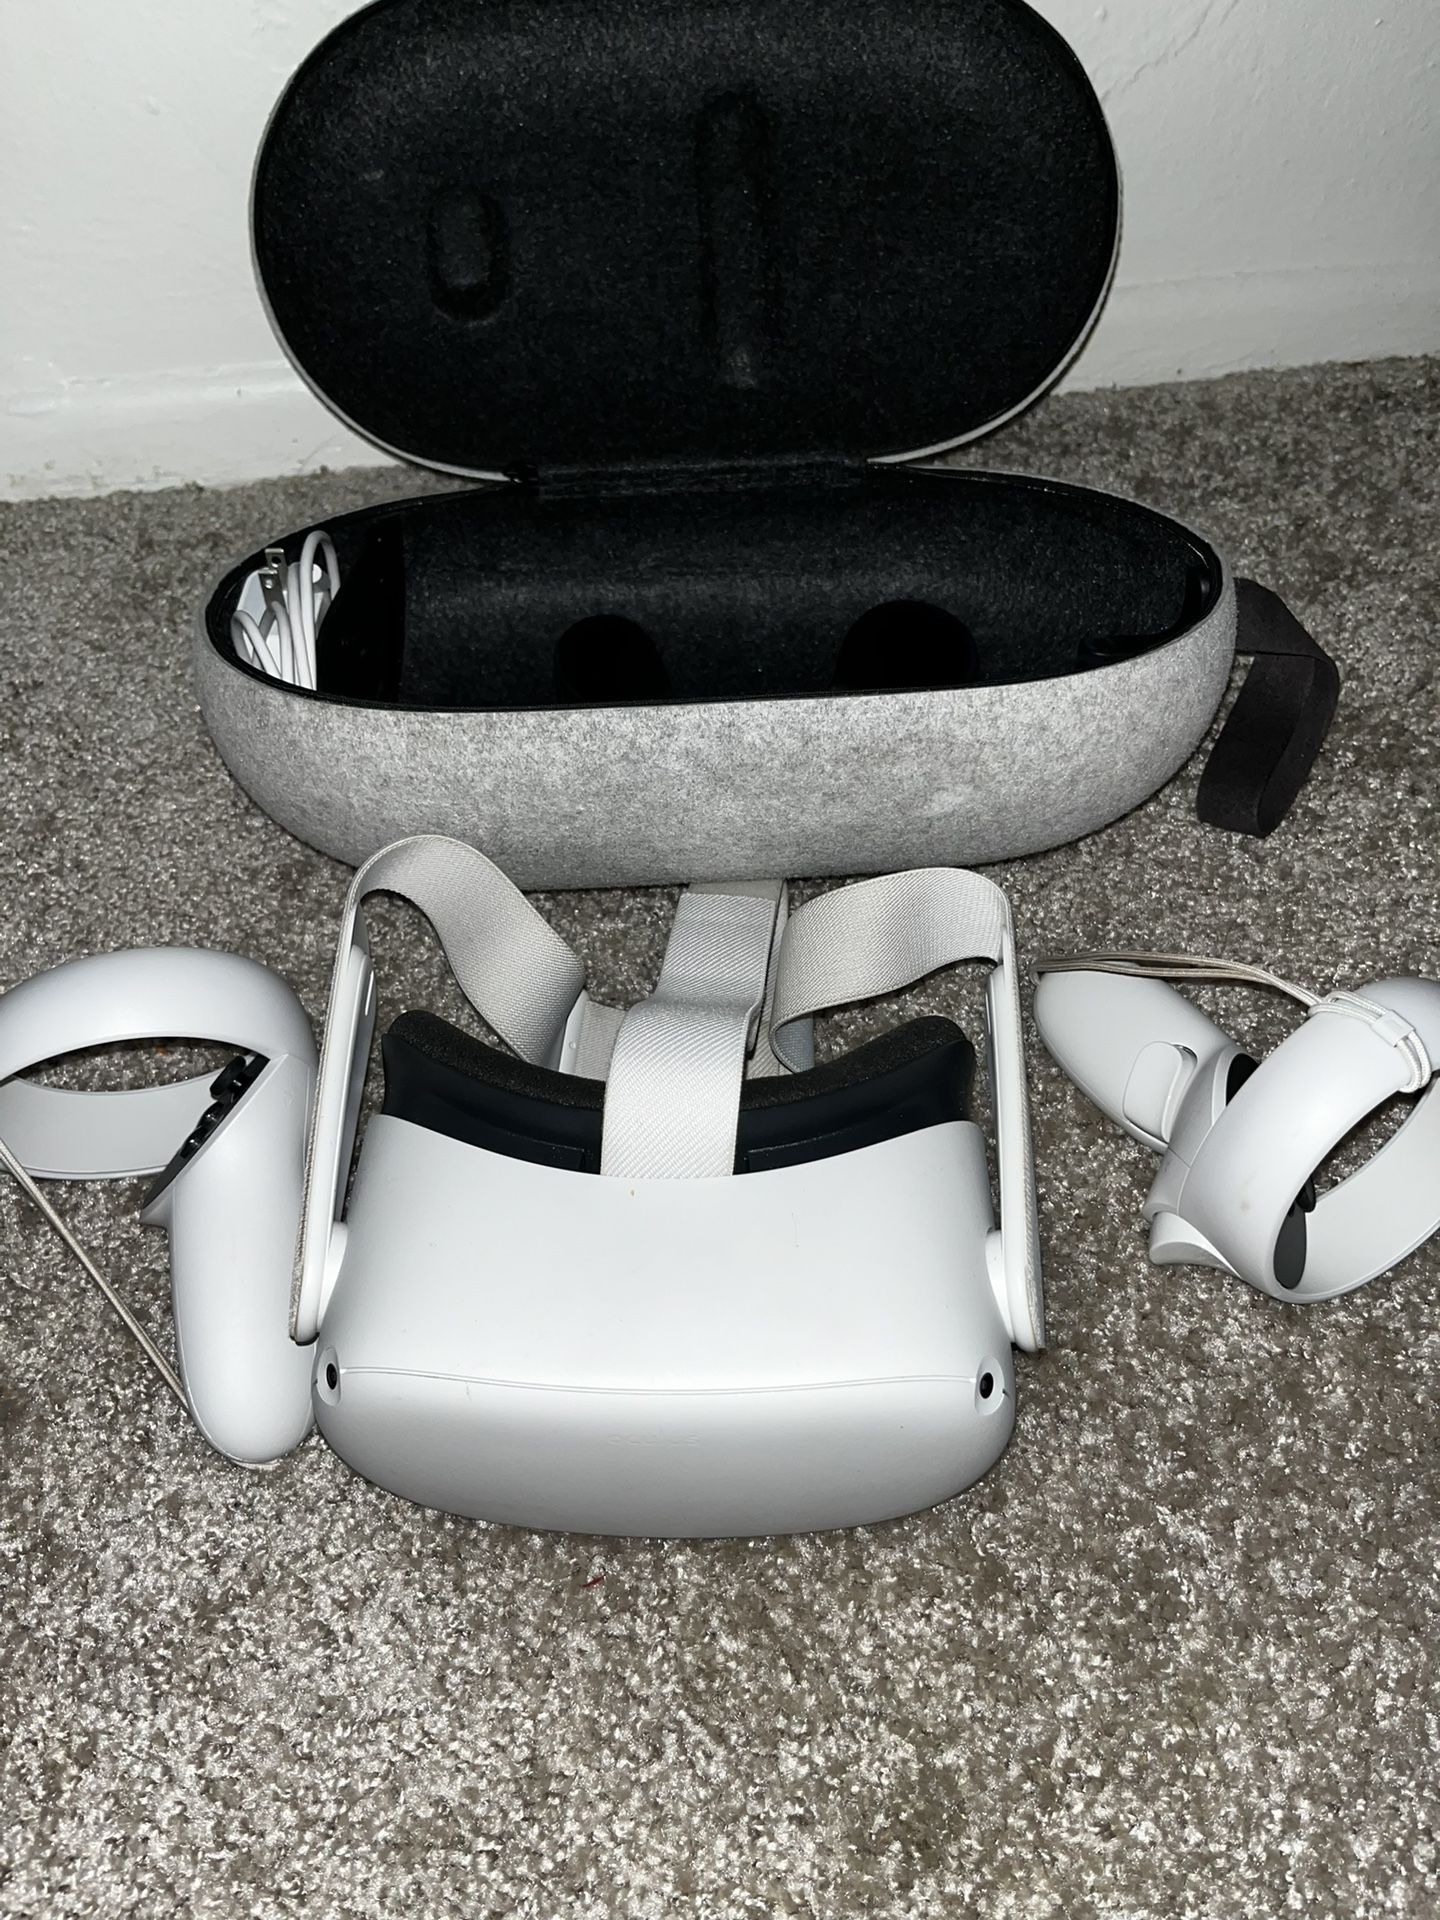 Nintendo and oculus $350 minimal use 